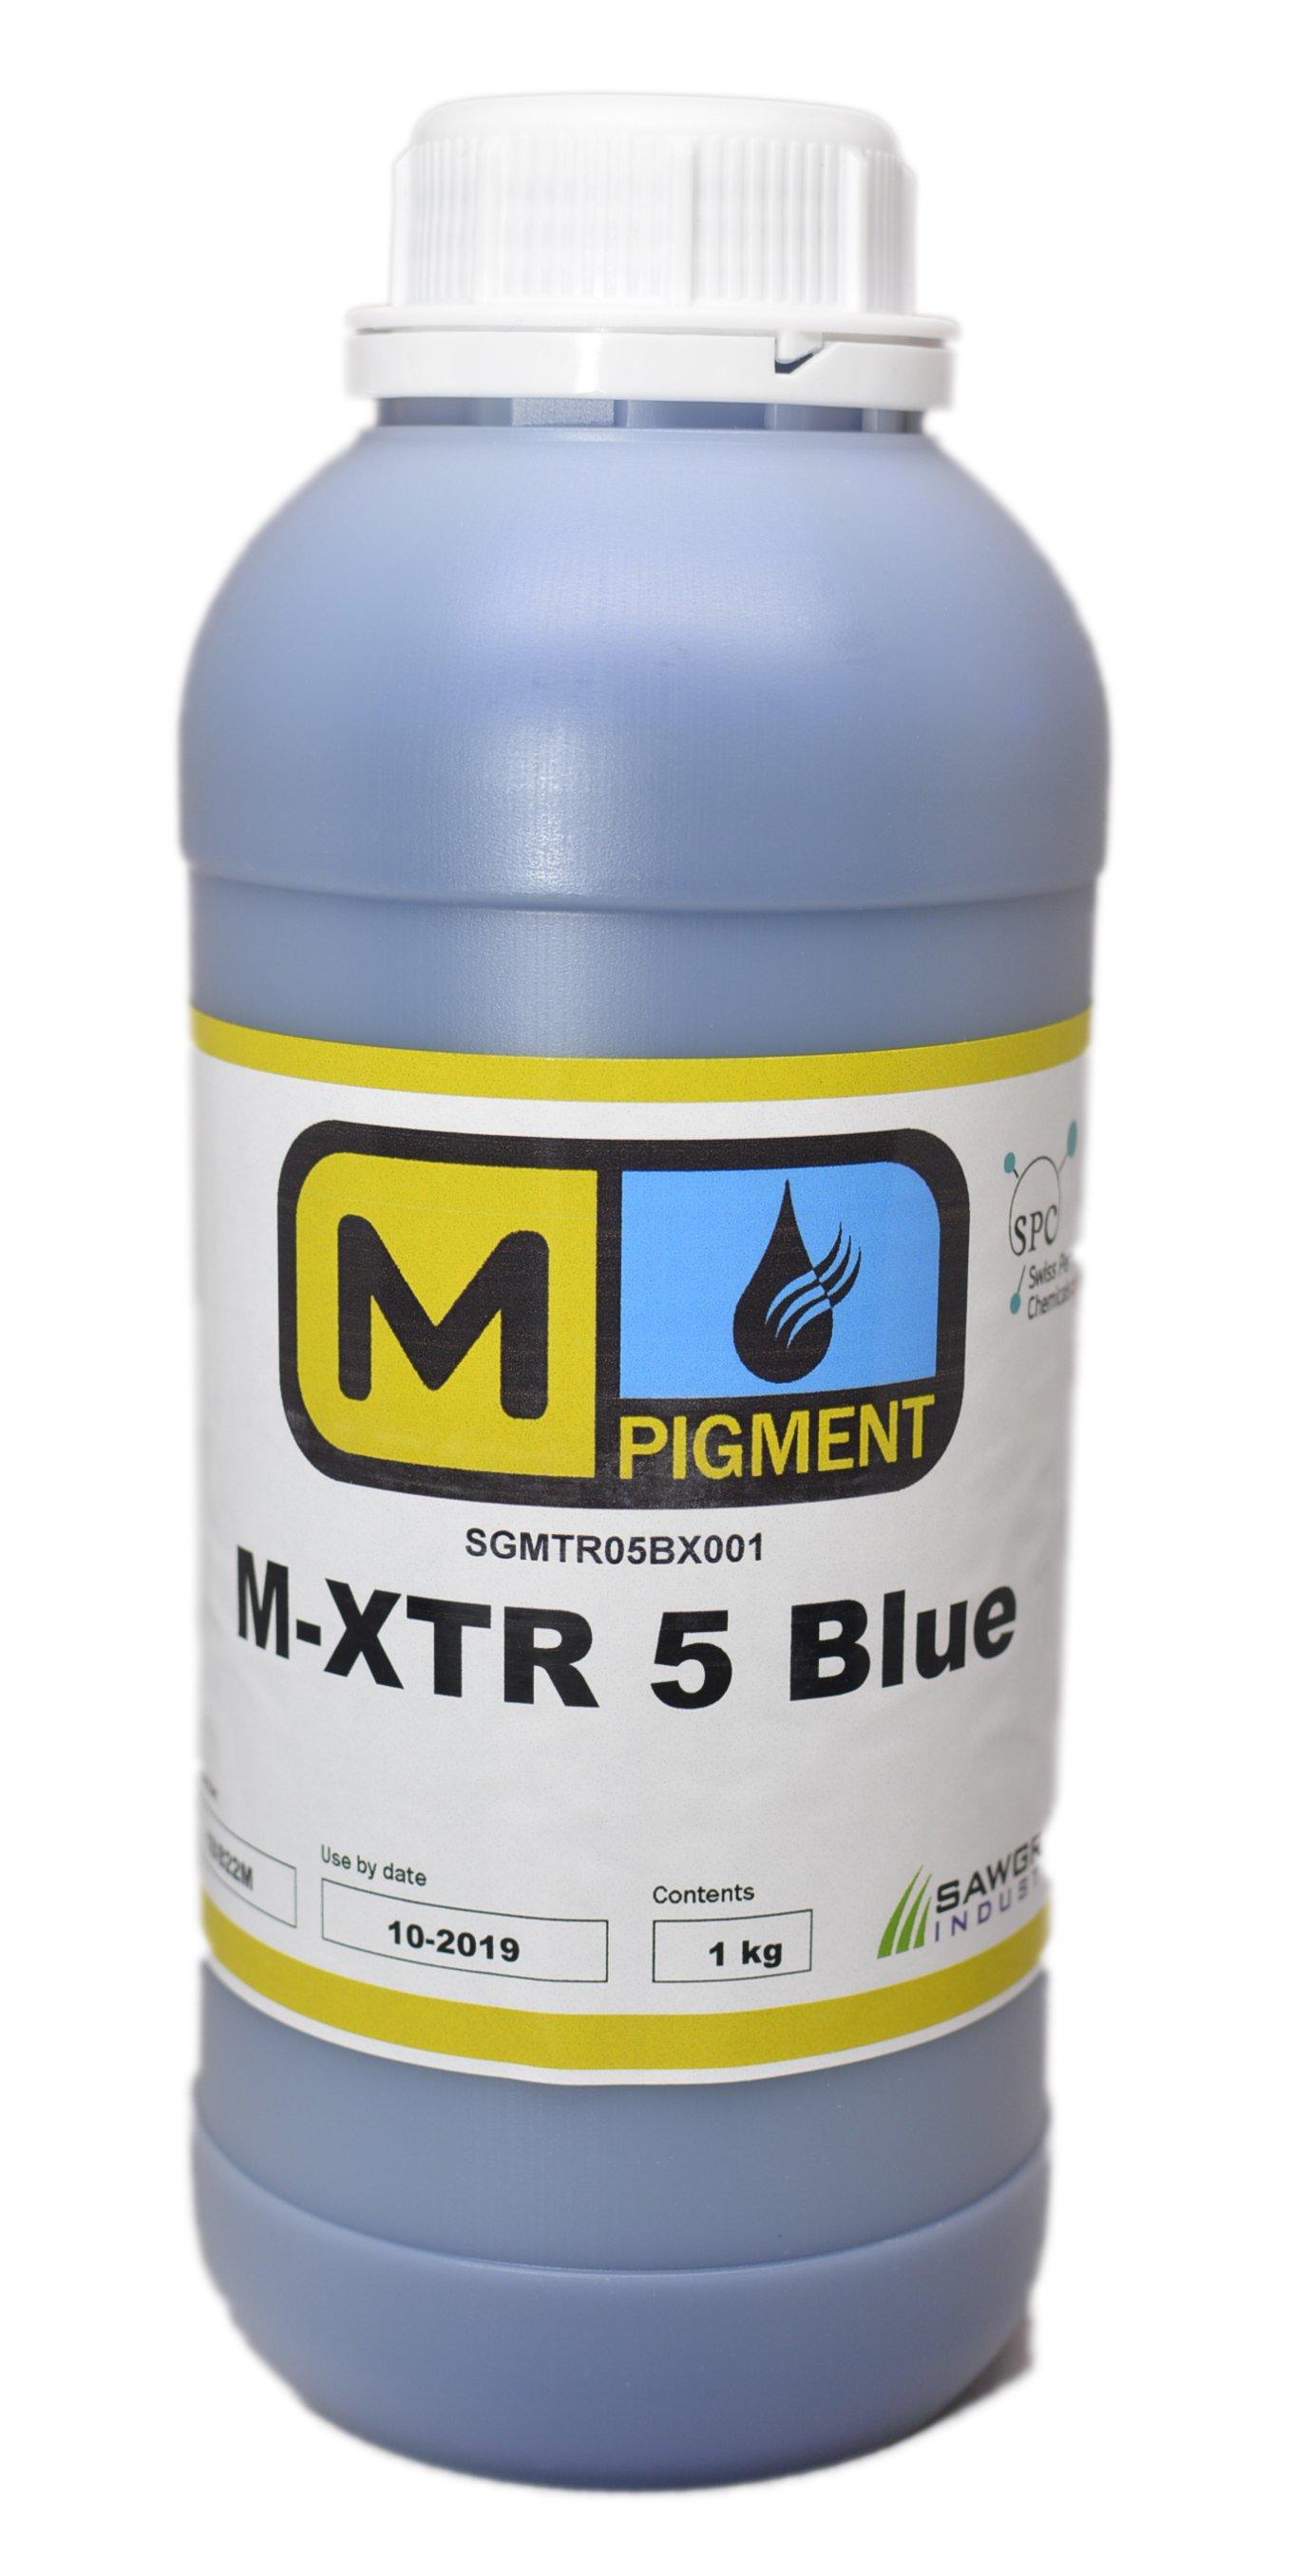 M-XTR5 Blue Pigment Textile ink for Epson printheads DX4-DX7 - Rainbowjet Digital